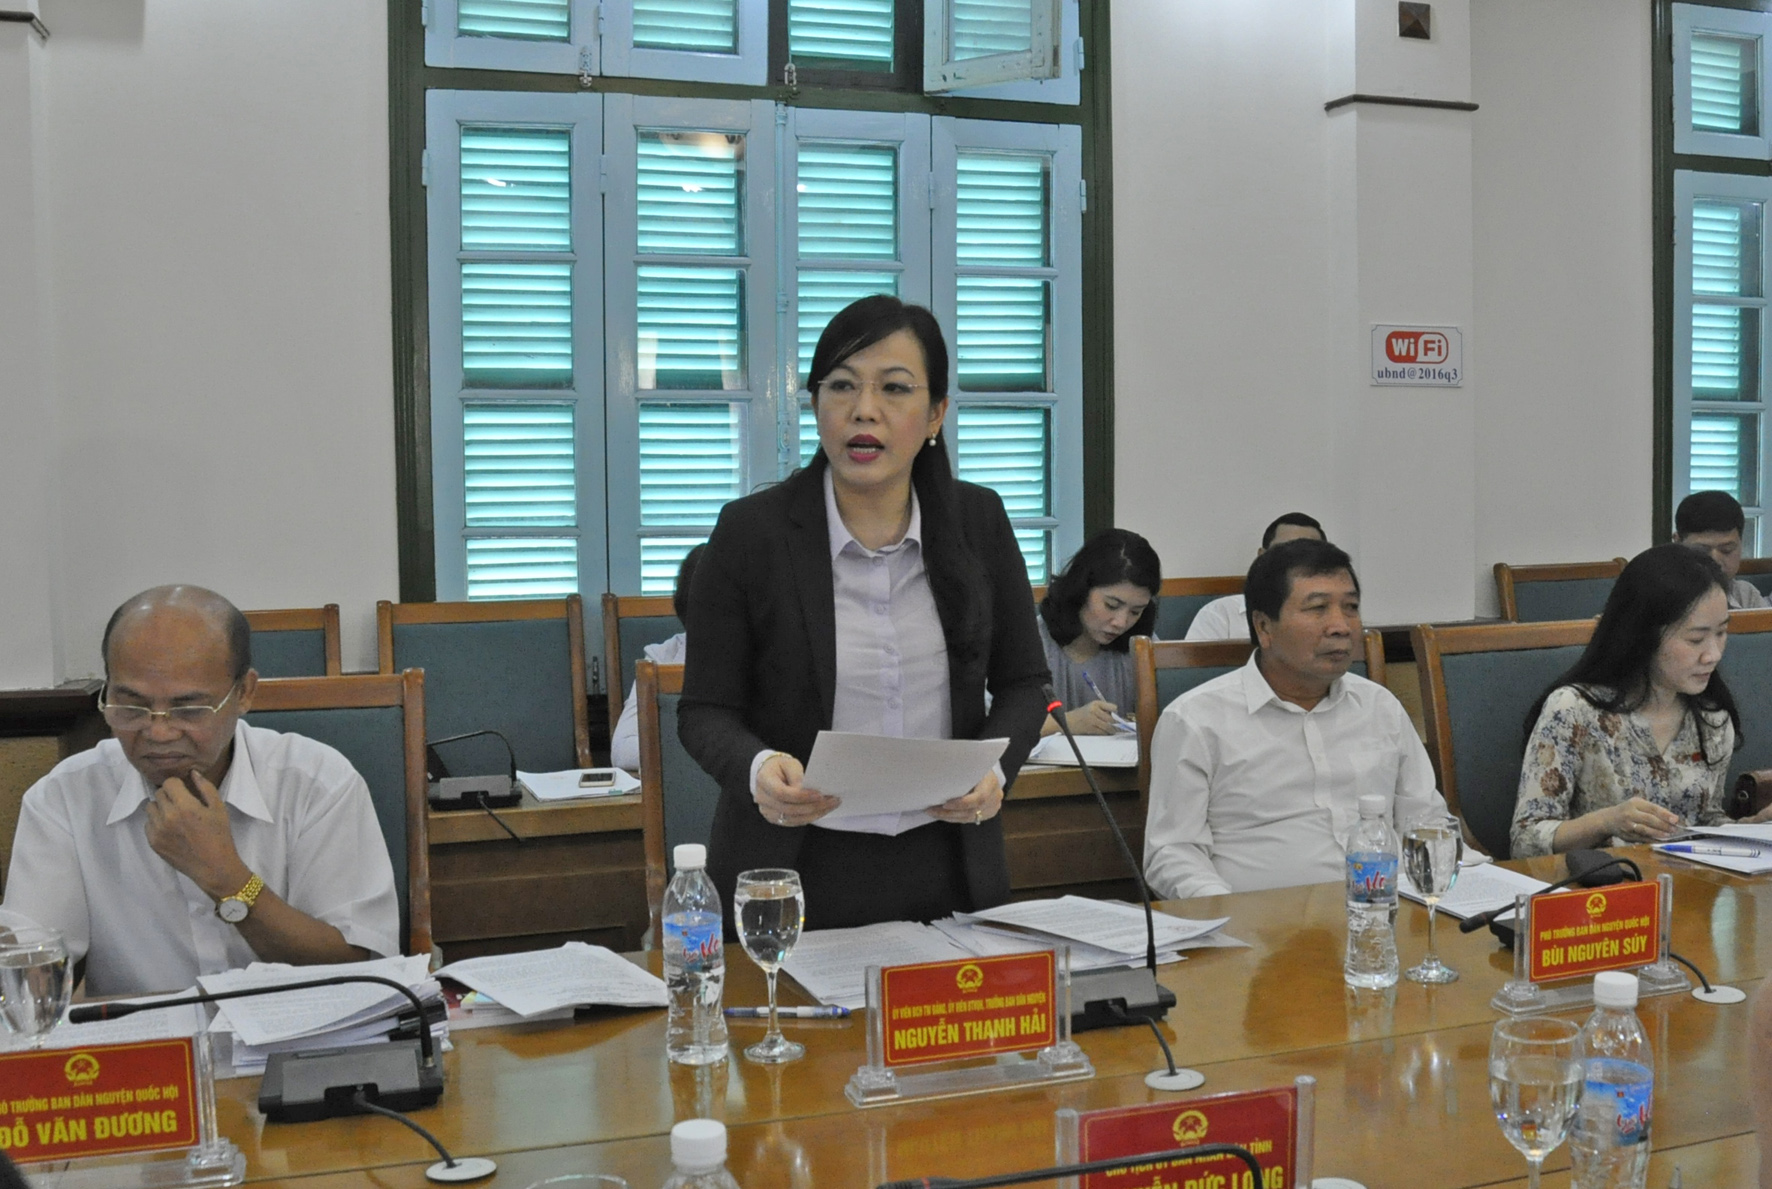 Đồng chí Nguyễn Thanh Hải, Trưởng Ban Dân nguyện của Ủy ban Thường vụ Quốc hội kết luận sau buổi làm việc